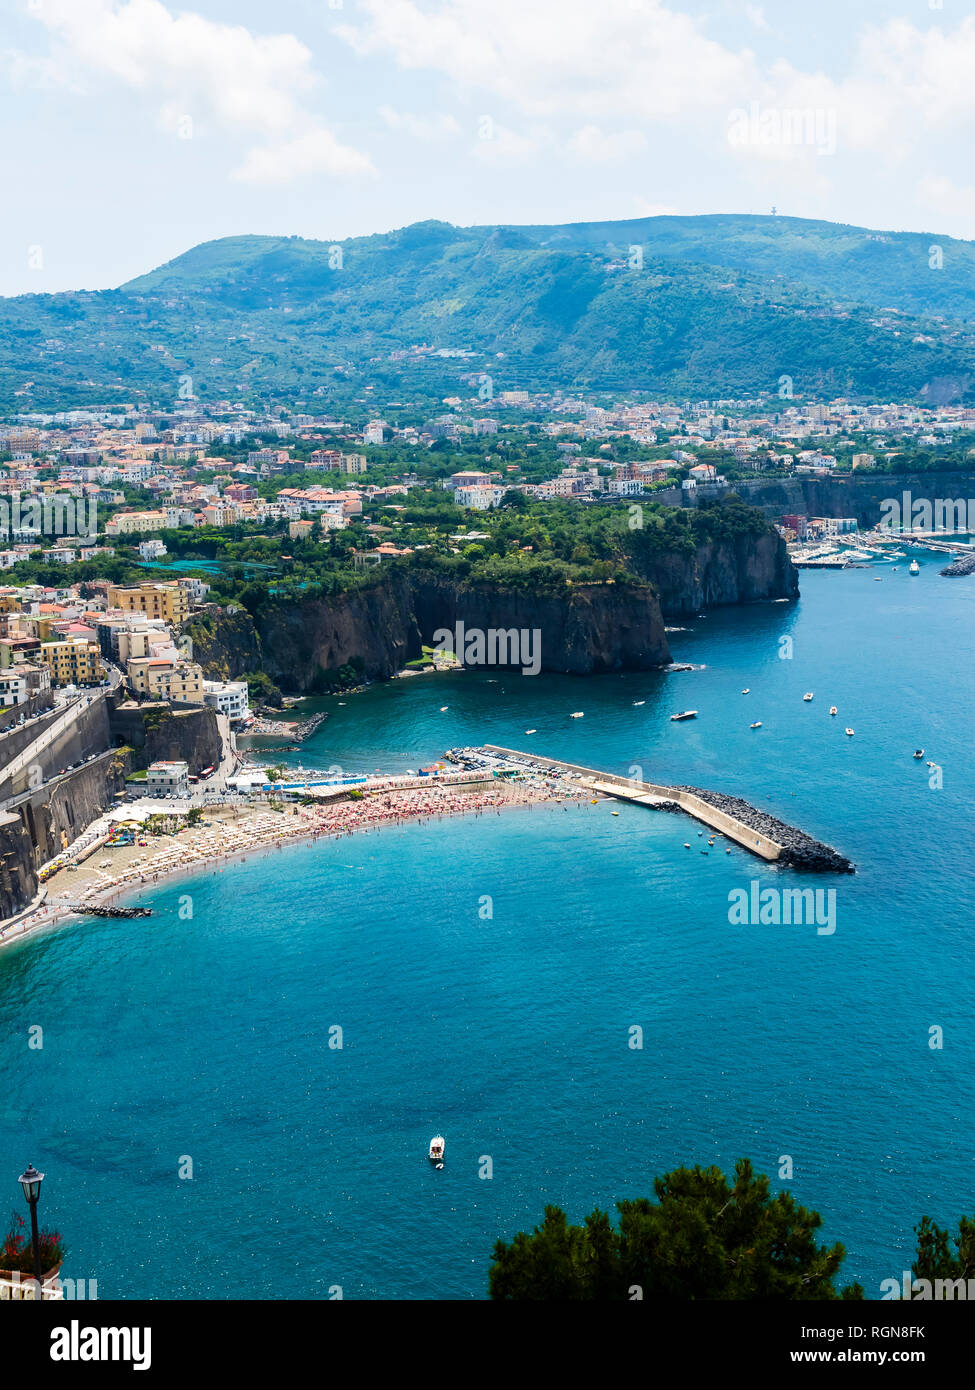 Italy, Campania, Naples, Gulf of Naples, Sorrento, View of cliff coast Meta di Sorrento Stock Photo